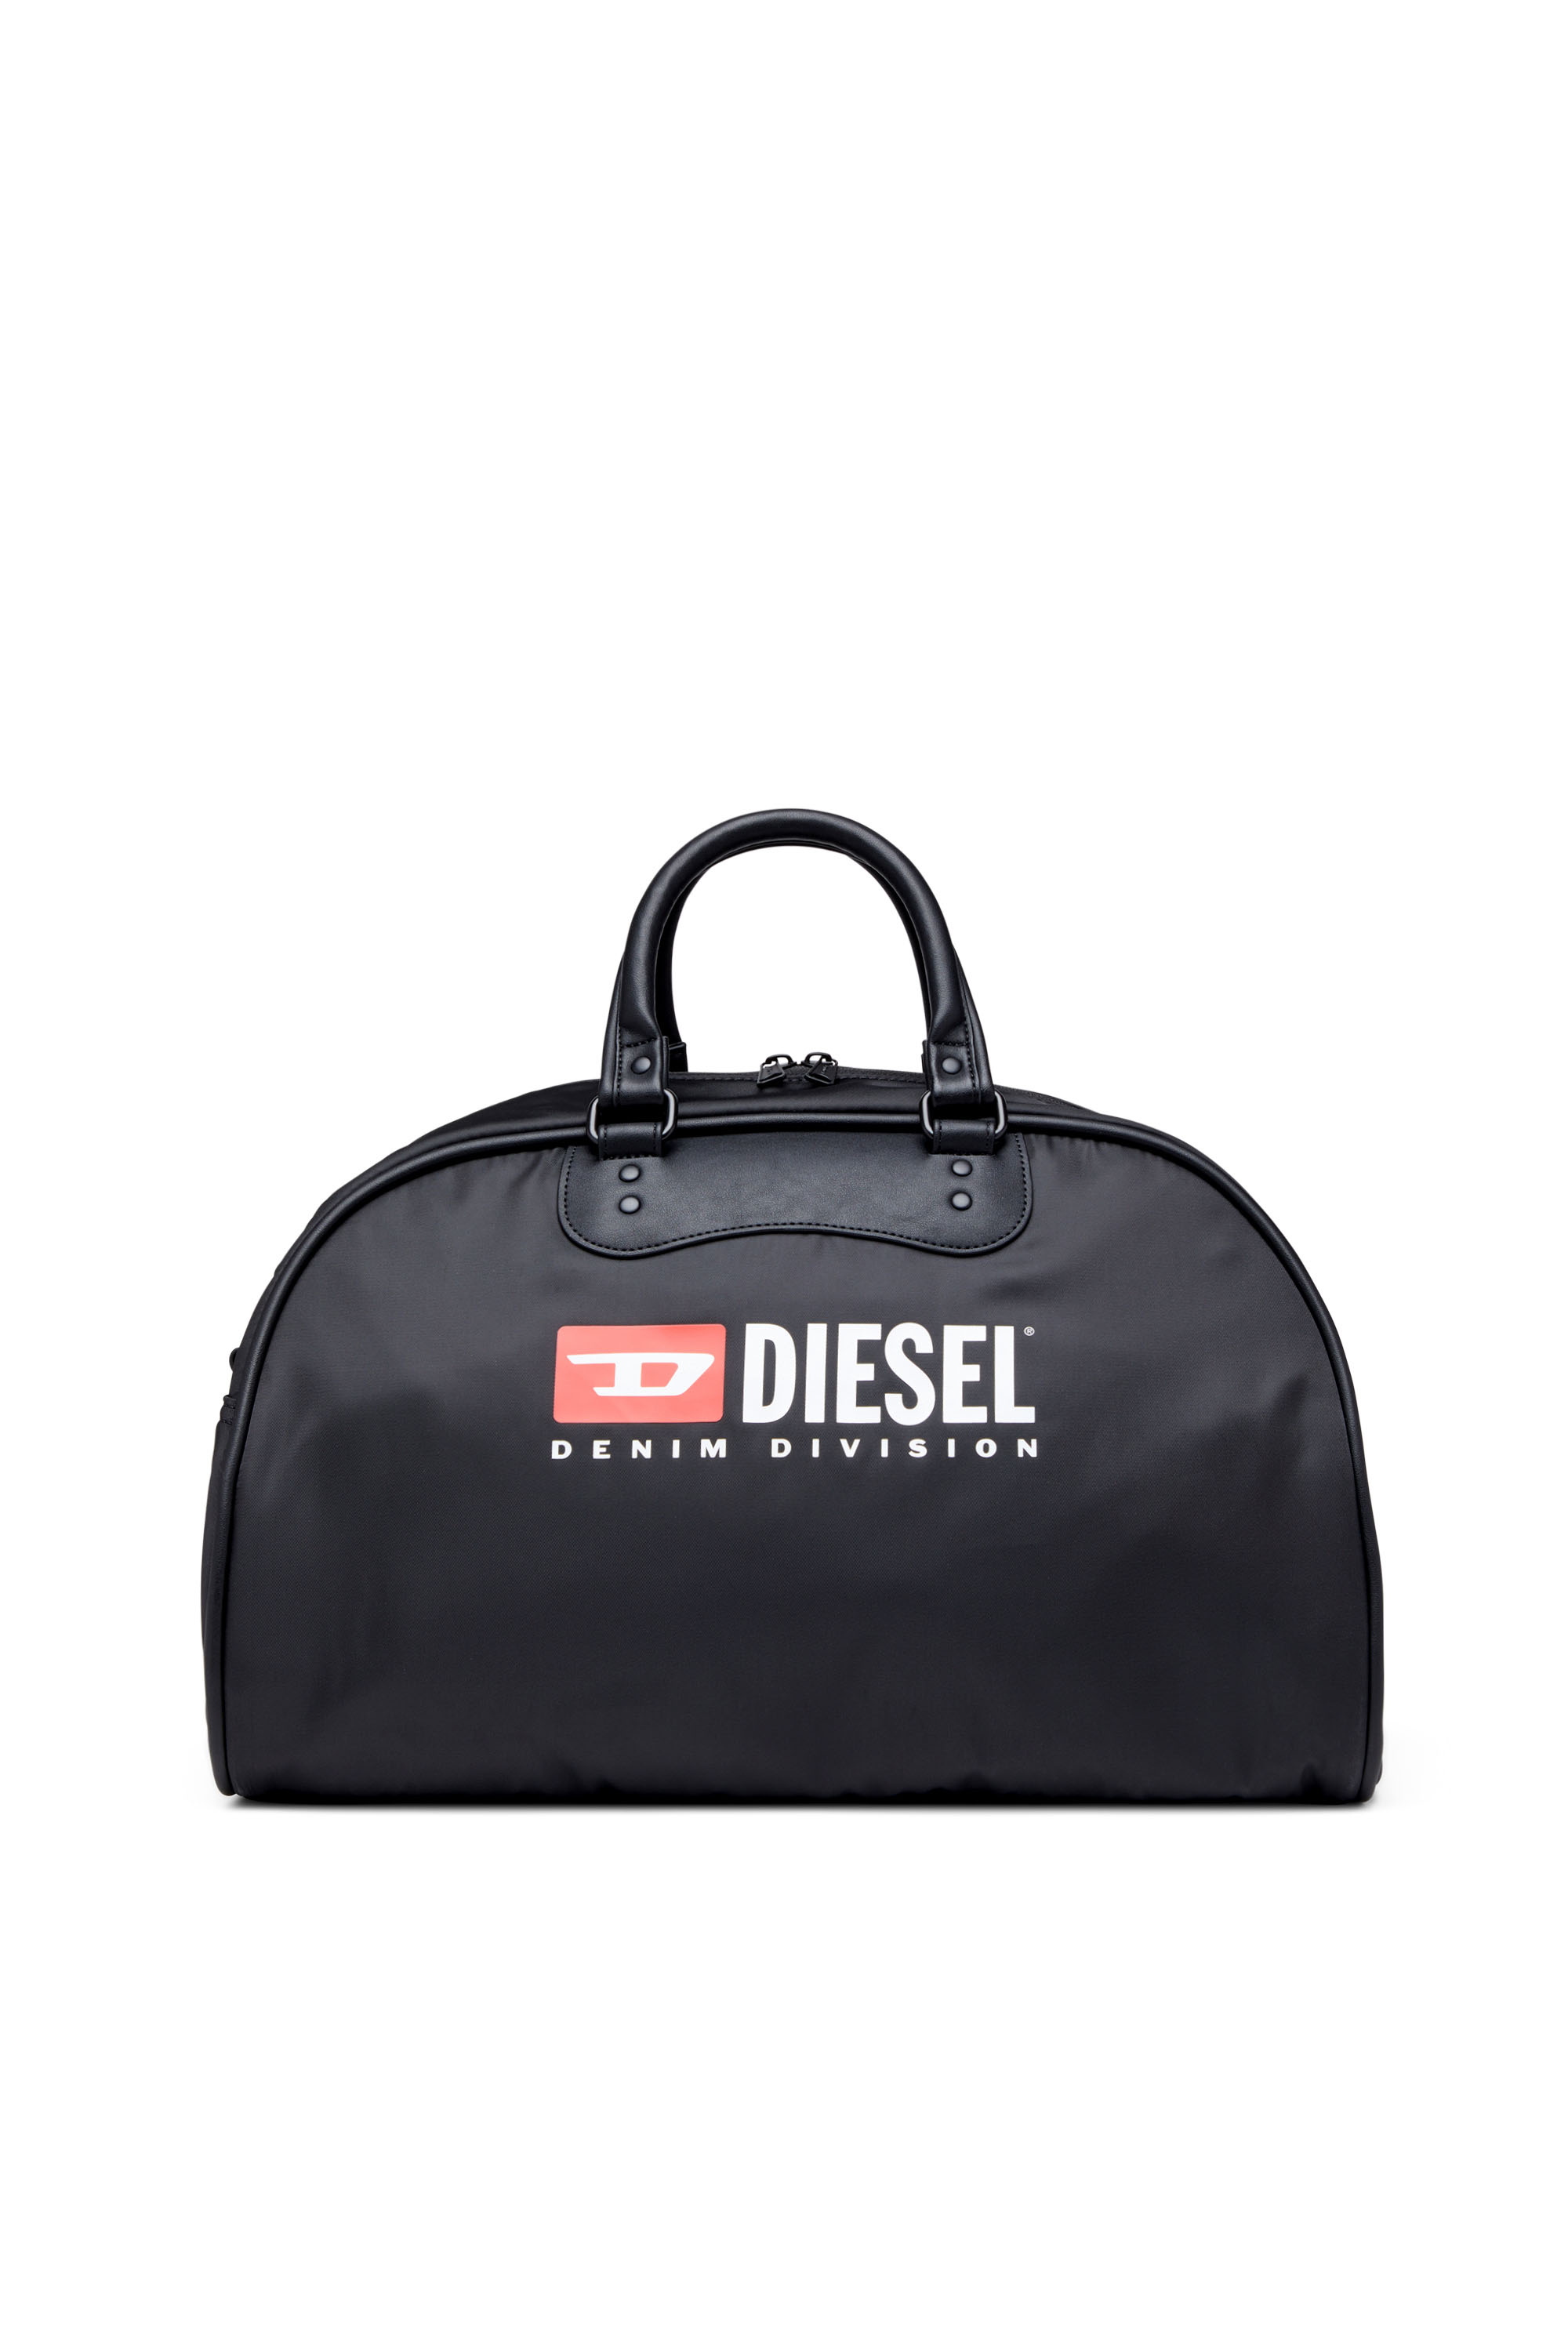 Diesel - RINKE DUFFLE, ブラック - Image 1